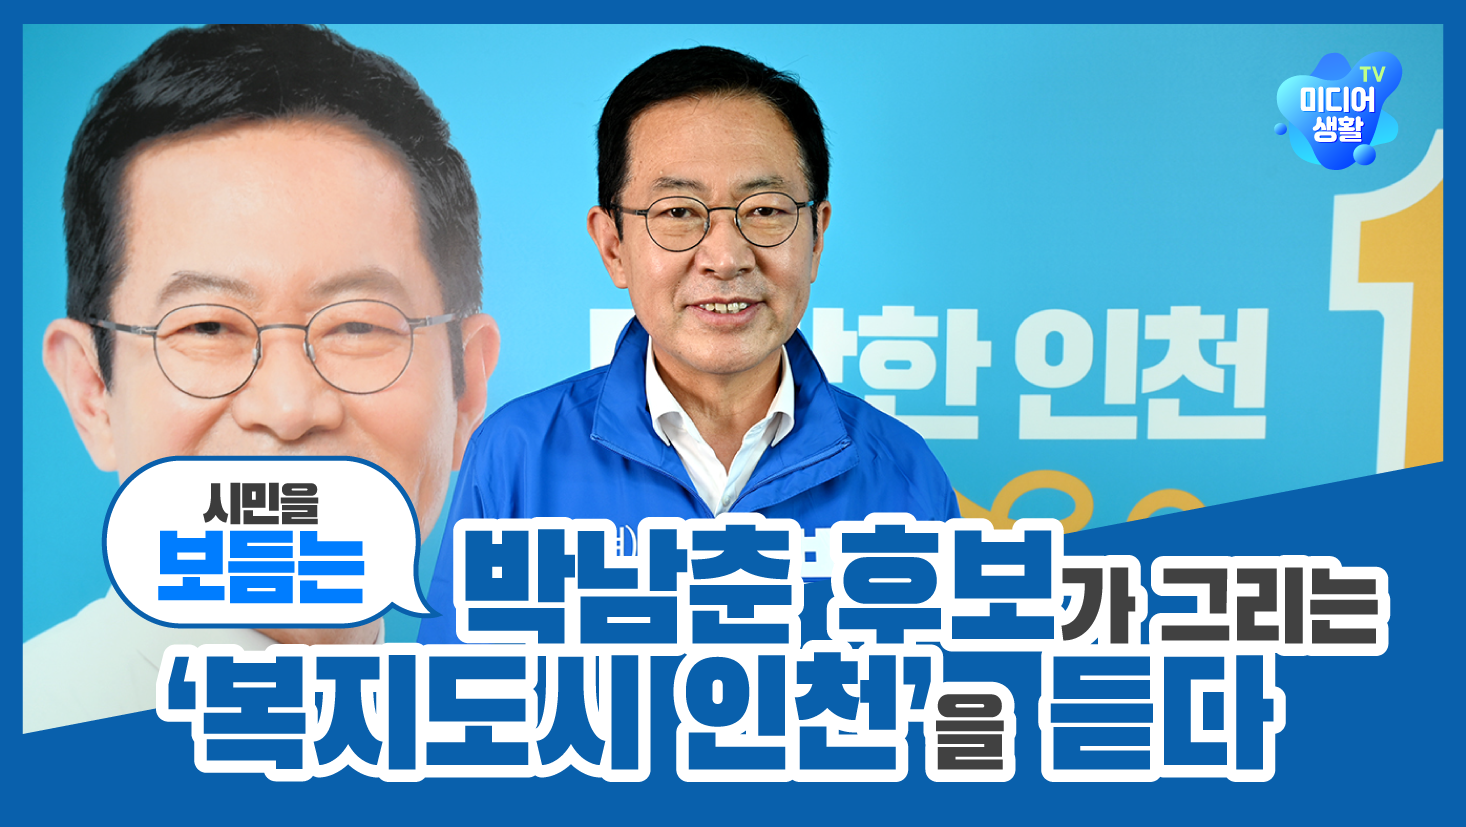 [2022 6.1 지방선거] 박남춘 후보가 그리는 ‘시민을 보듬는 복지도시 인천’을 듣다